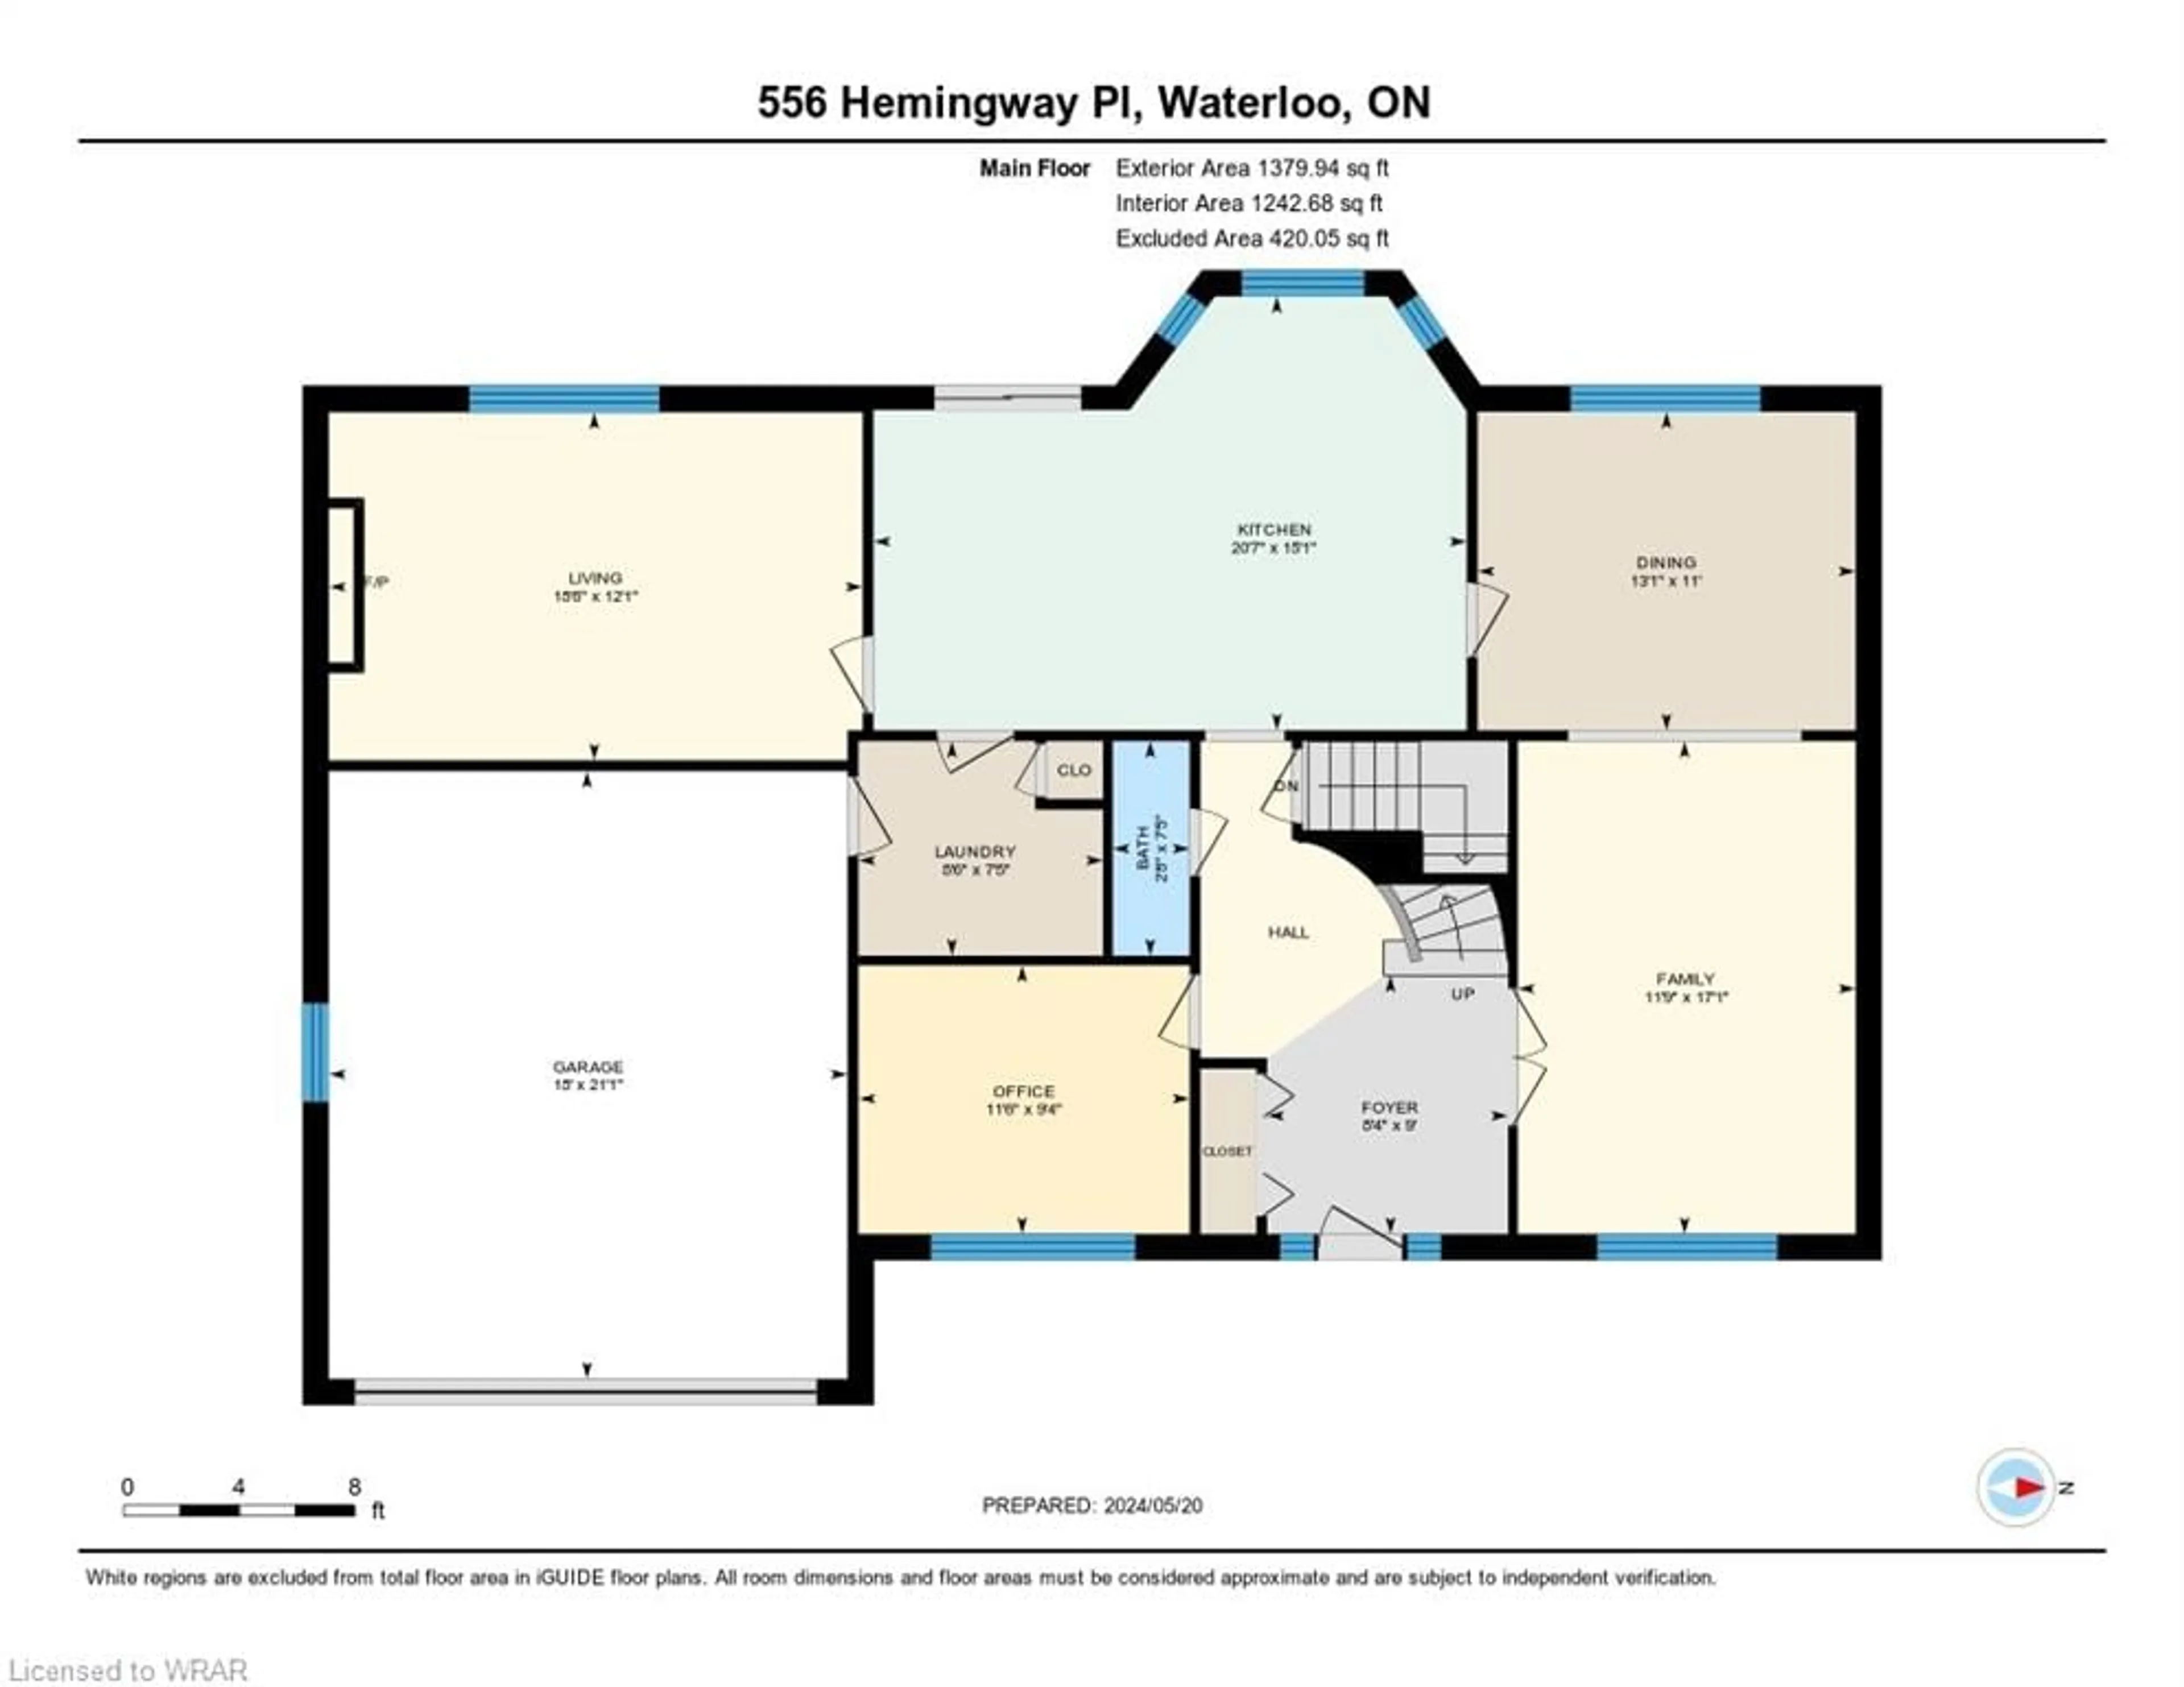 Floor plan for 556 Hemingway Pl, Waterloo Ontario N2T 1Z5